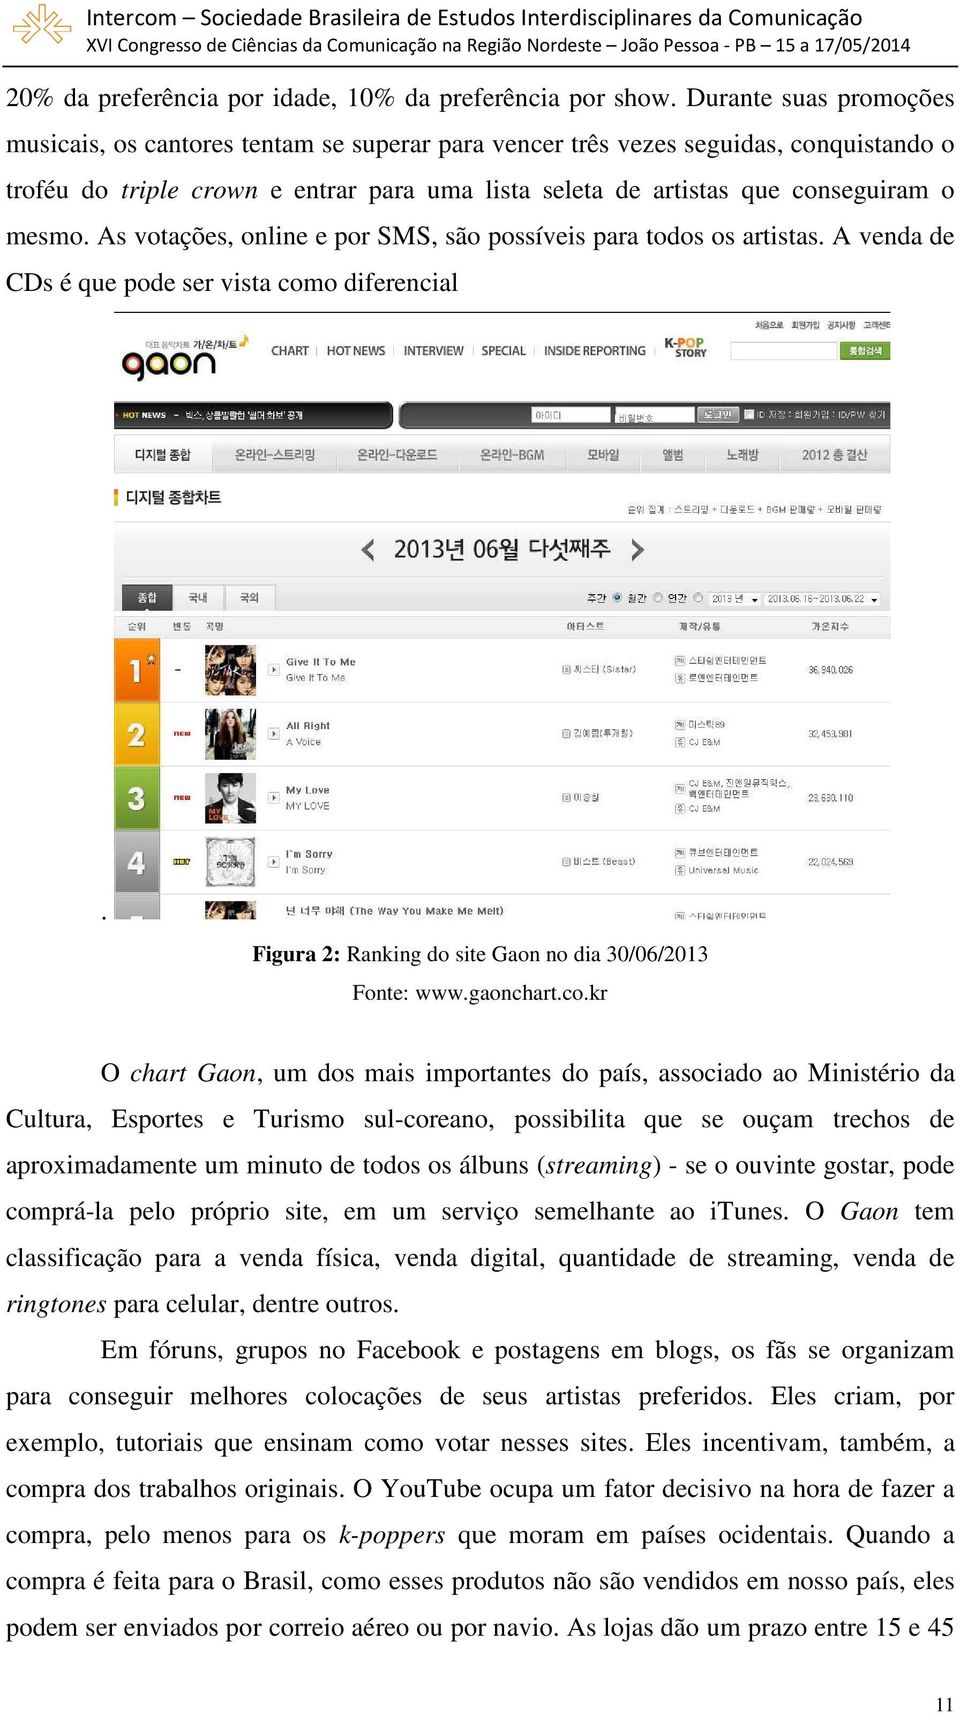 mesmo. As votações, online e por SMS, são possíveis para todos os artistas. A venda de CDs é que pode ser vista como diferencial. Figura 2: Ranking do site Gaon no dia 30/06/2013 Fonte: www.gaonchart.